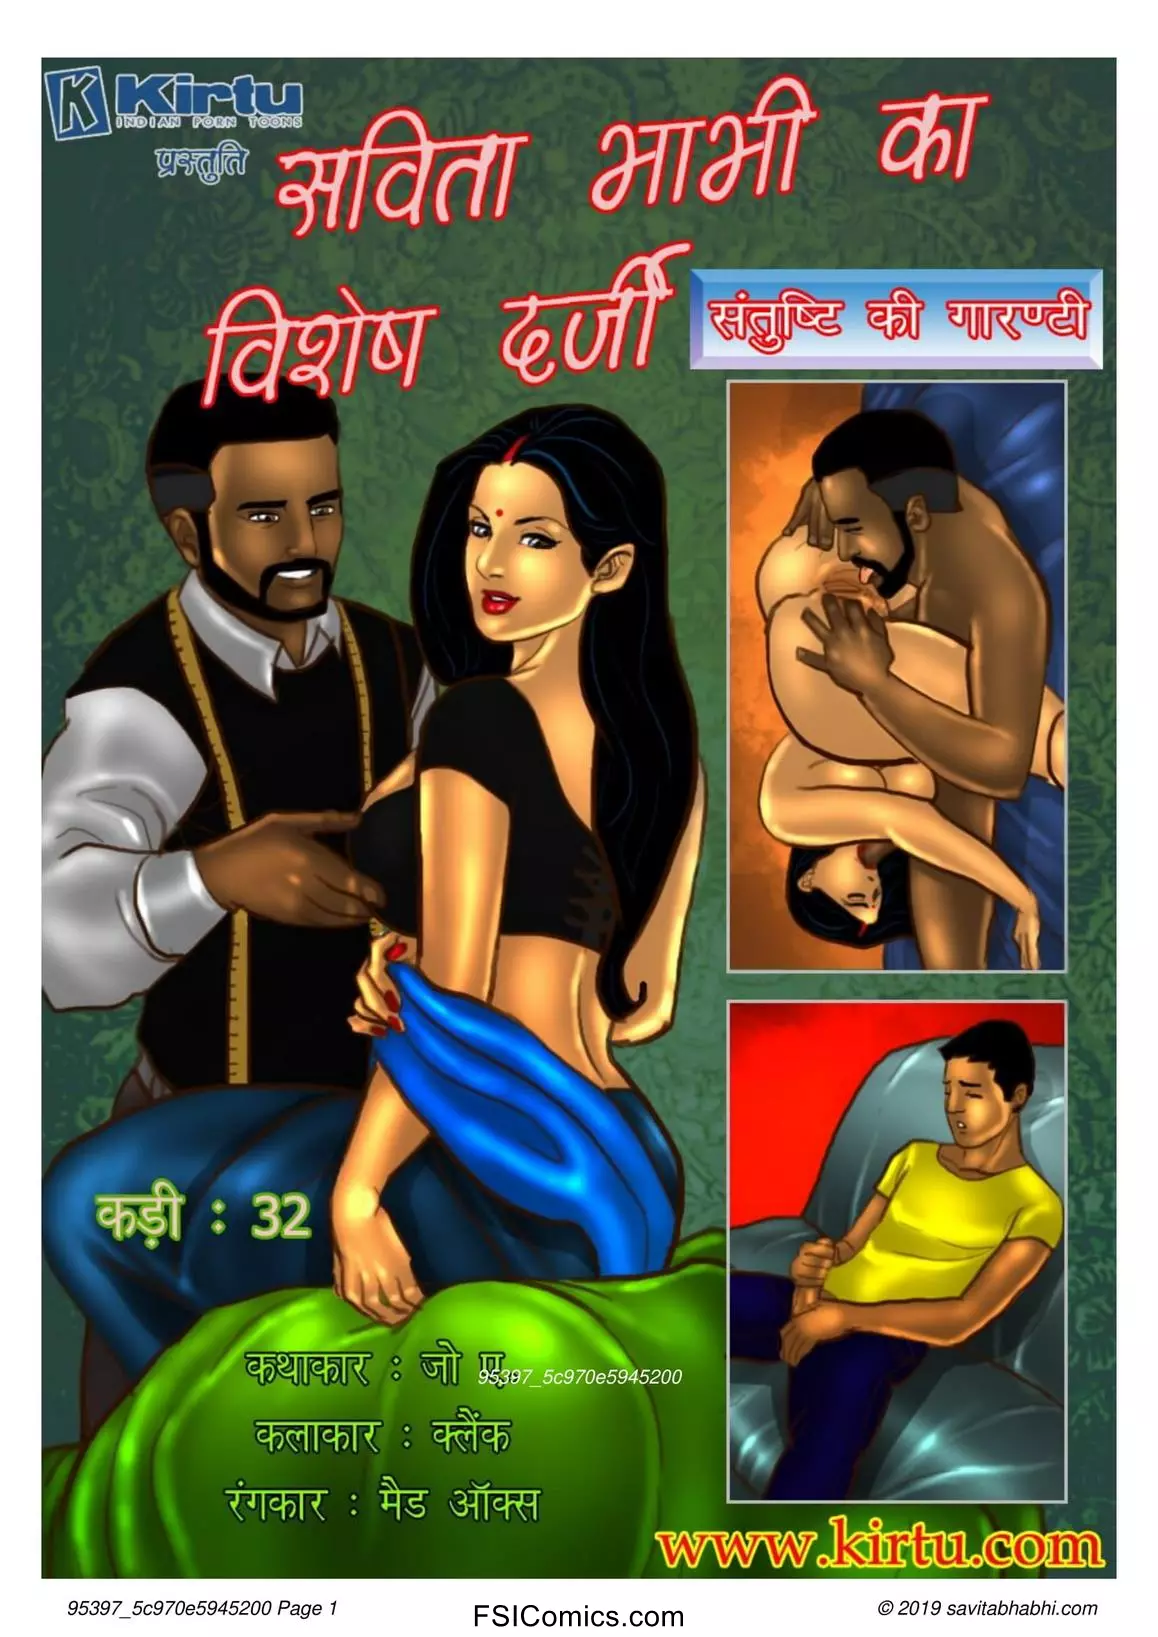 Savita Bhabhi Episode 32 Hindi – Savita Bhabhi Ka Vishesh Darji (सविता भाभी का विशेष दर्जी!!) - 65 - Fsicomics